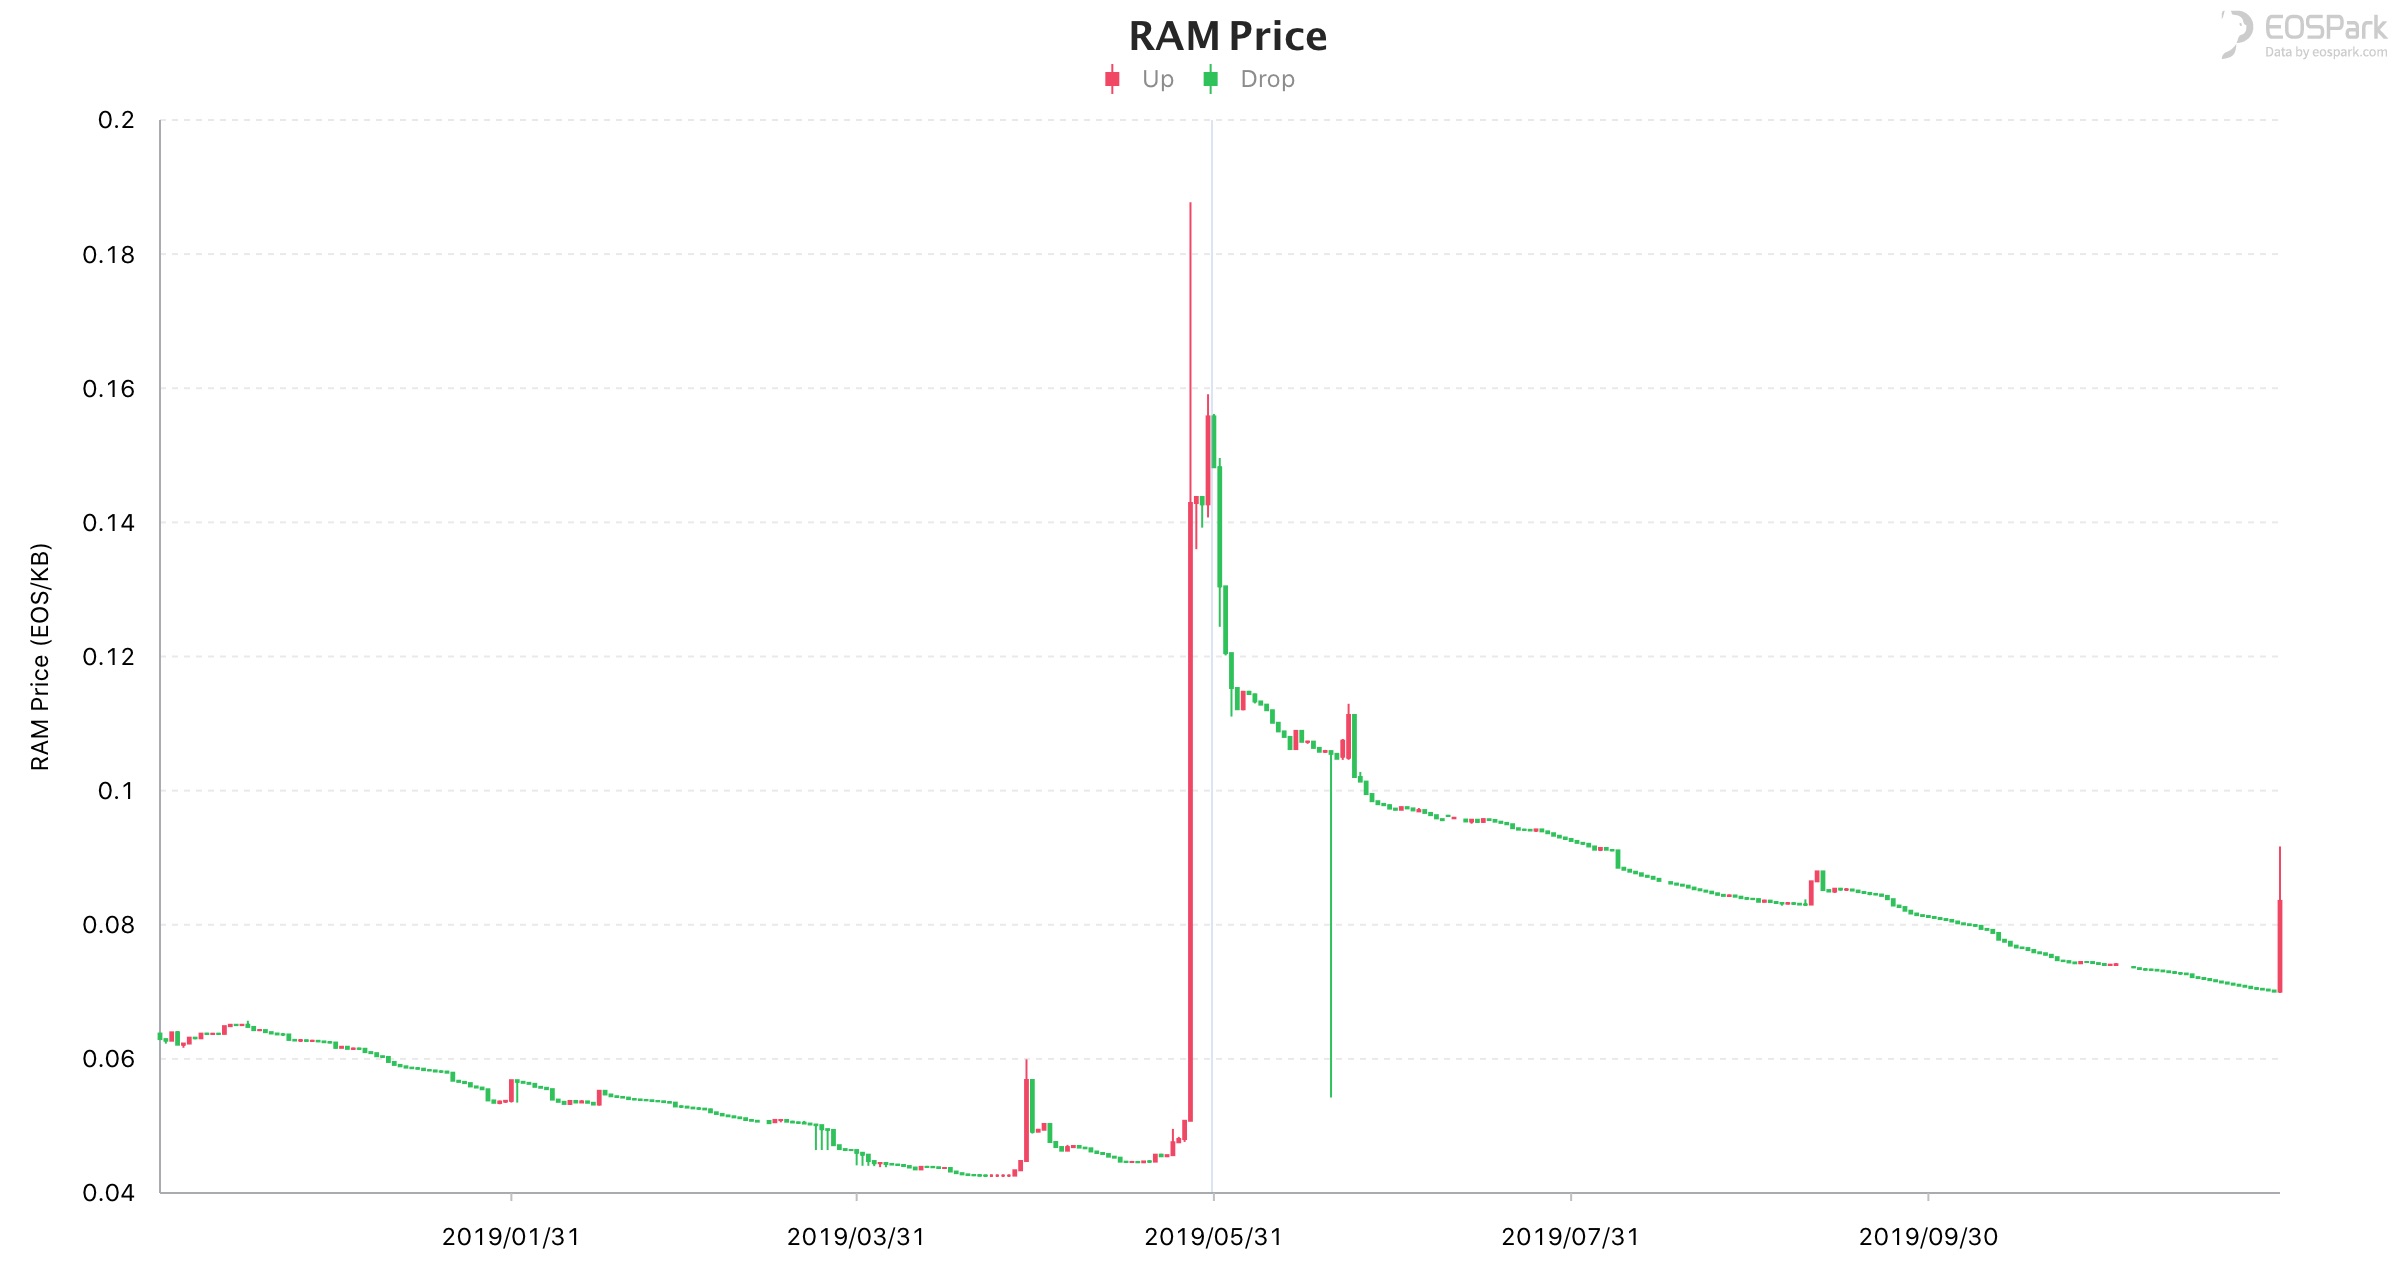 RAM Price